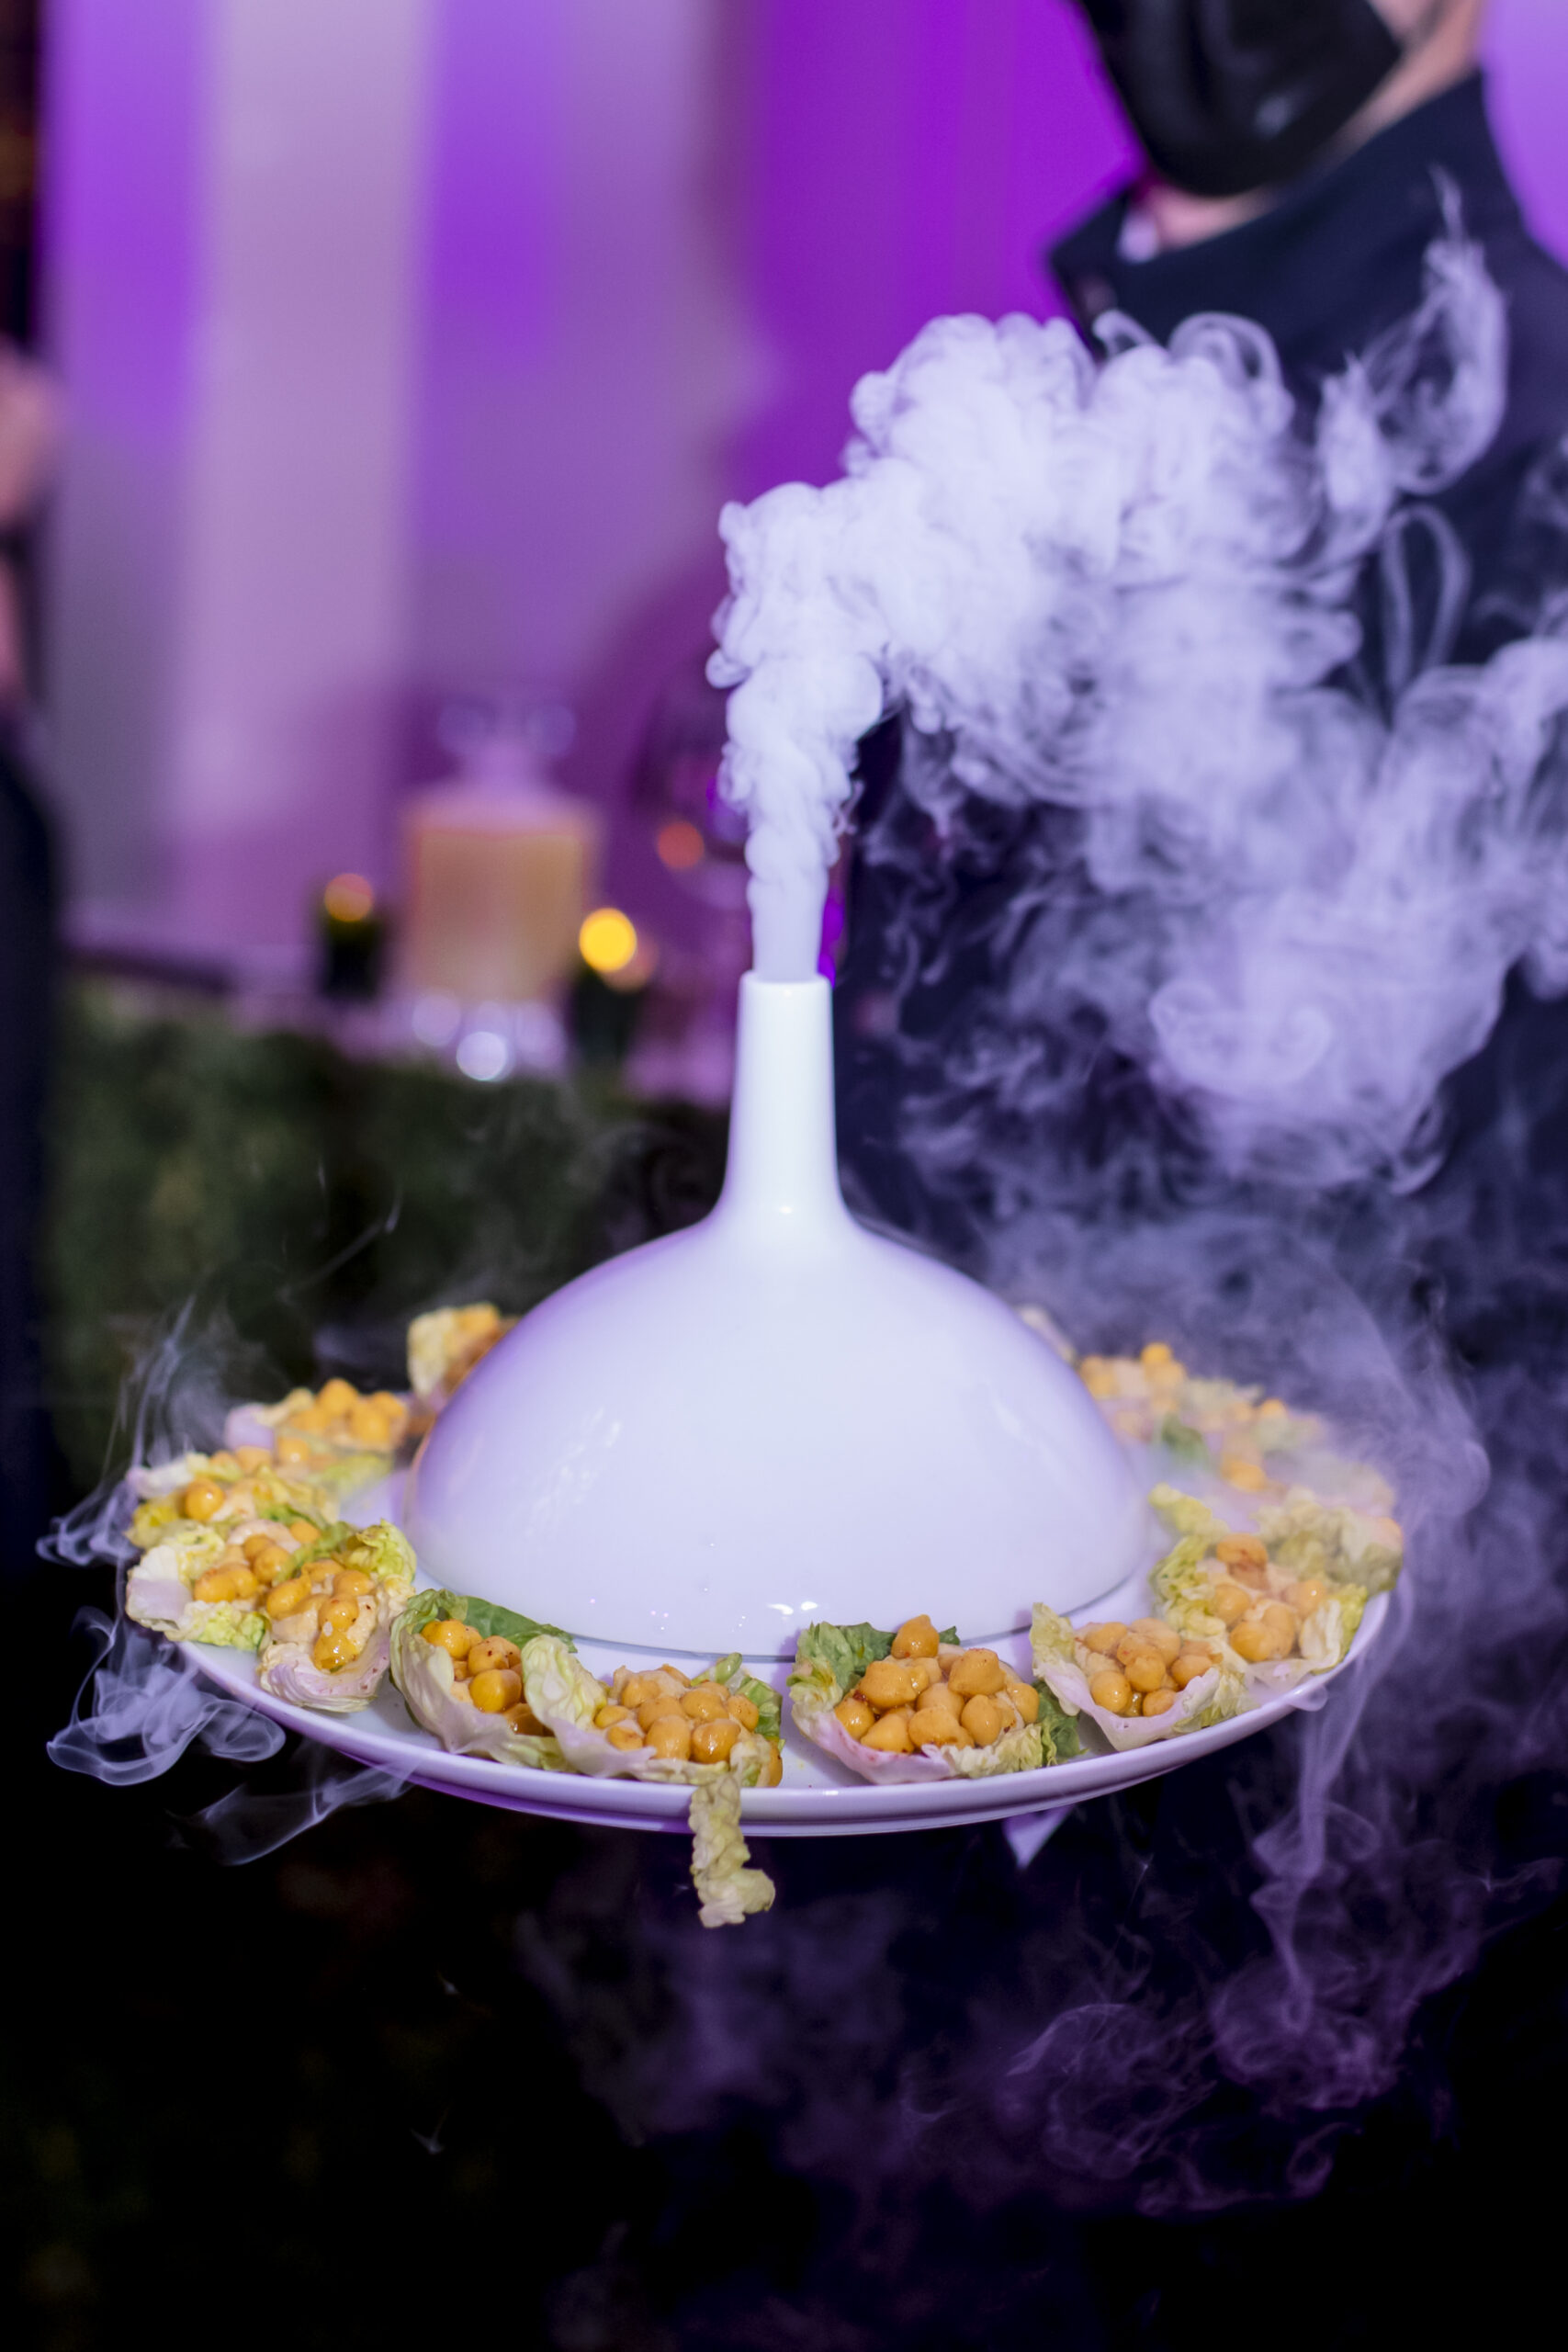 food presentation with smoke